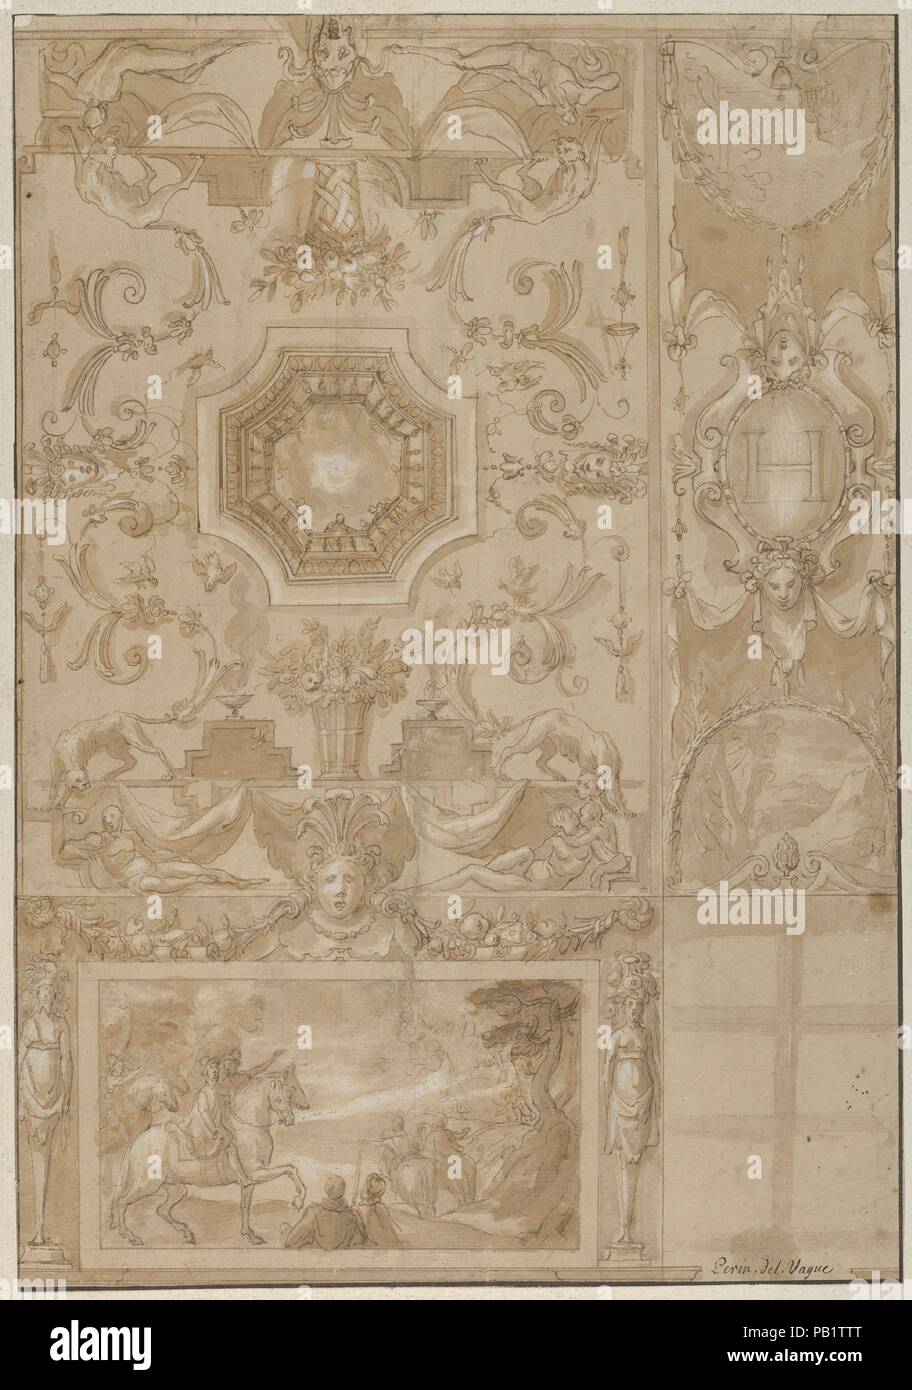 Conception d'un mur et plafond décoré d'une galerie, marquée avec le monogramme du roi français Henri III ou IV. Artiste : Toussaint Dubreuil (français, Paris ca. 1561-1602 Paris) ; précédemment attribué à Perino del Vaga (Pietro Buonaccorsi (Italien), Florence Rome 1501-1547). Fiche Technique : Dimensions : 14 1/8 x 9 3/4 in. (35,9 × 24,8 cm). Date : ca. 1580-1600. Design pour la décoration d'un mur et plafond, très probablement avec une voûte. Sur le bas de la feuille (une partie) de l'élévation d'un mur est illustré décoré avec un grand compartiment rectangulaire dans laquelle une scène de paysage est représenté. La decoratio Banque D'Images